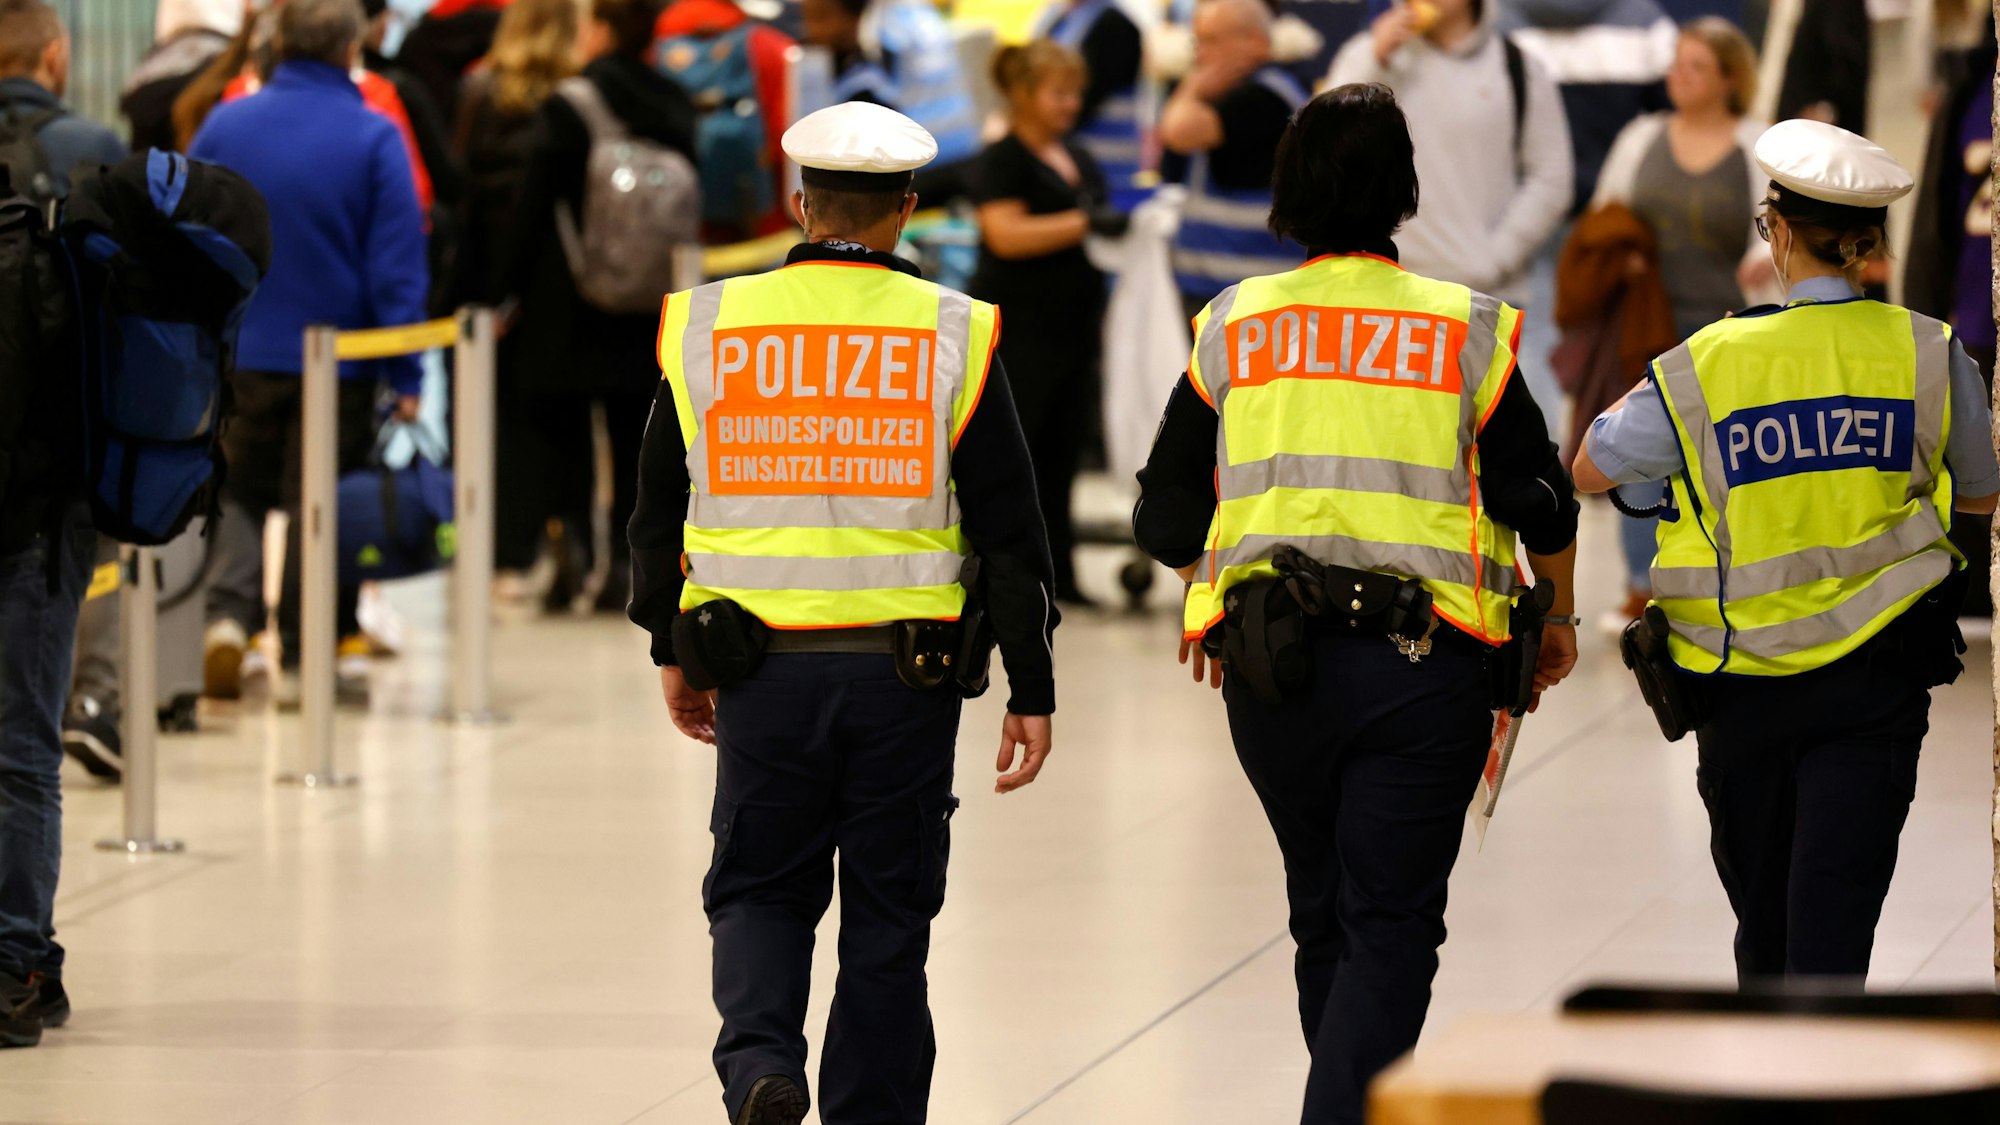 Zu sehen sind drei Bundespolizisten in der Rückansicht, die am Flughafen Köln/Bonn patrouillieren.